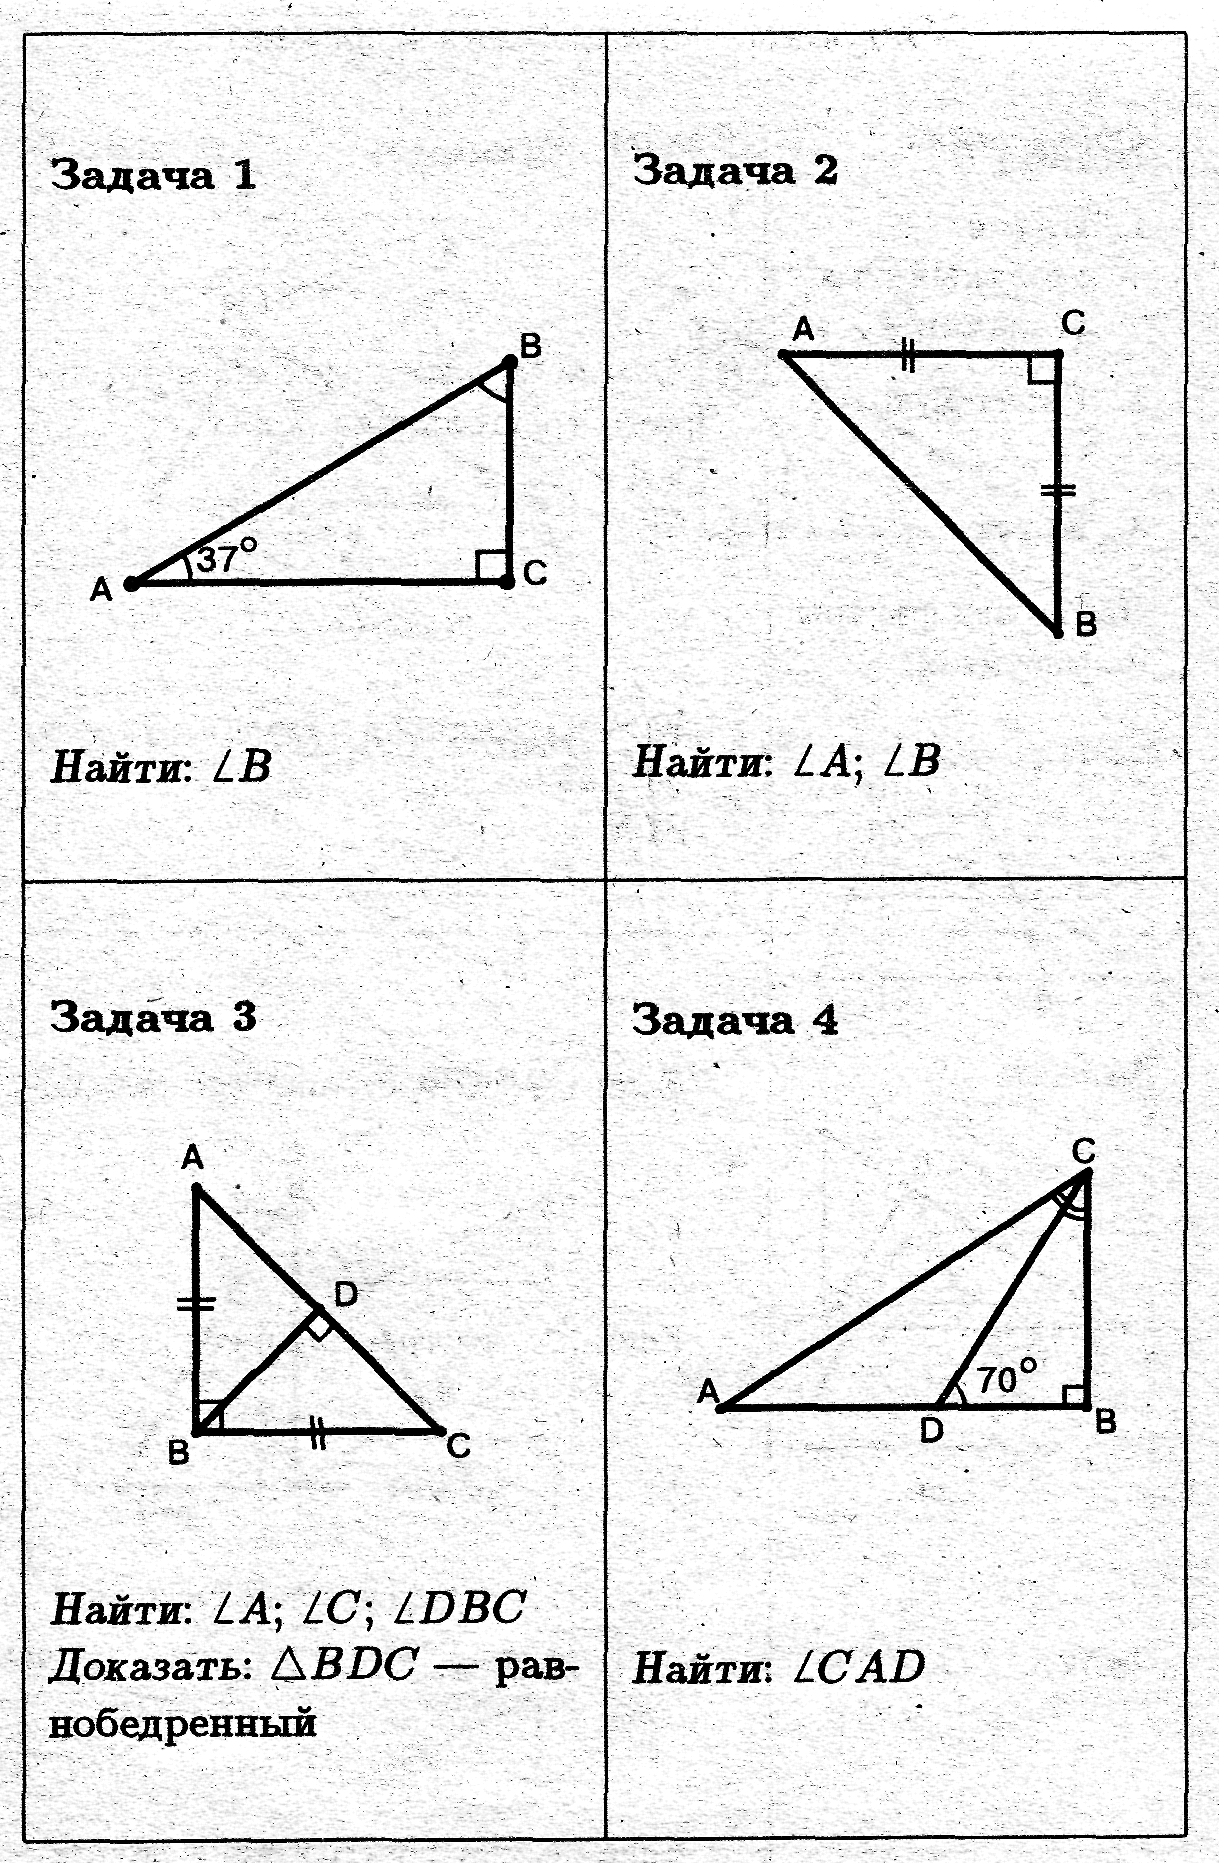 Решение прямоугольных треугольников 8 класс самостоятельная работа. Задачи на прямоугольный треугольник 7 класс по готовым чертежам. Свойства прямоугольного треугольника задачи на готовых чертежах. Задачи на прямоугольный треугольник 7 класс. Задачи по геометрии 7 класс прямоугольные треугольники.